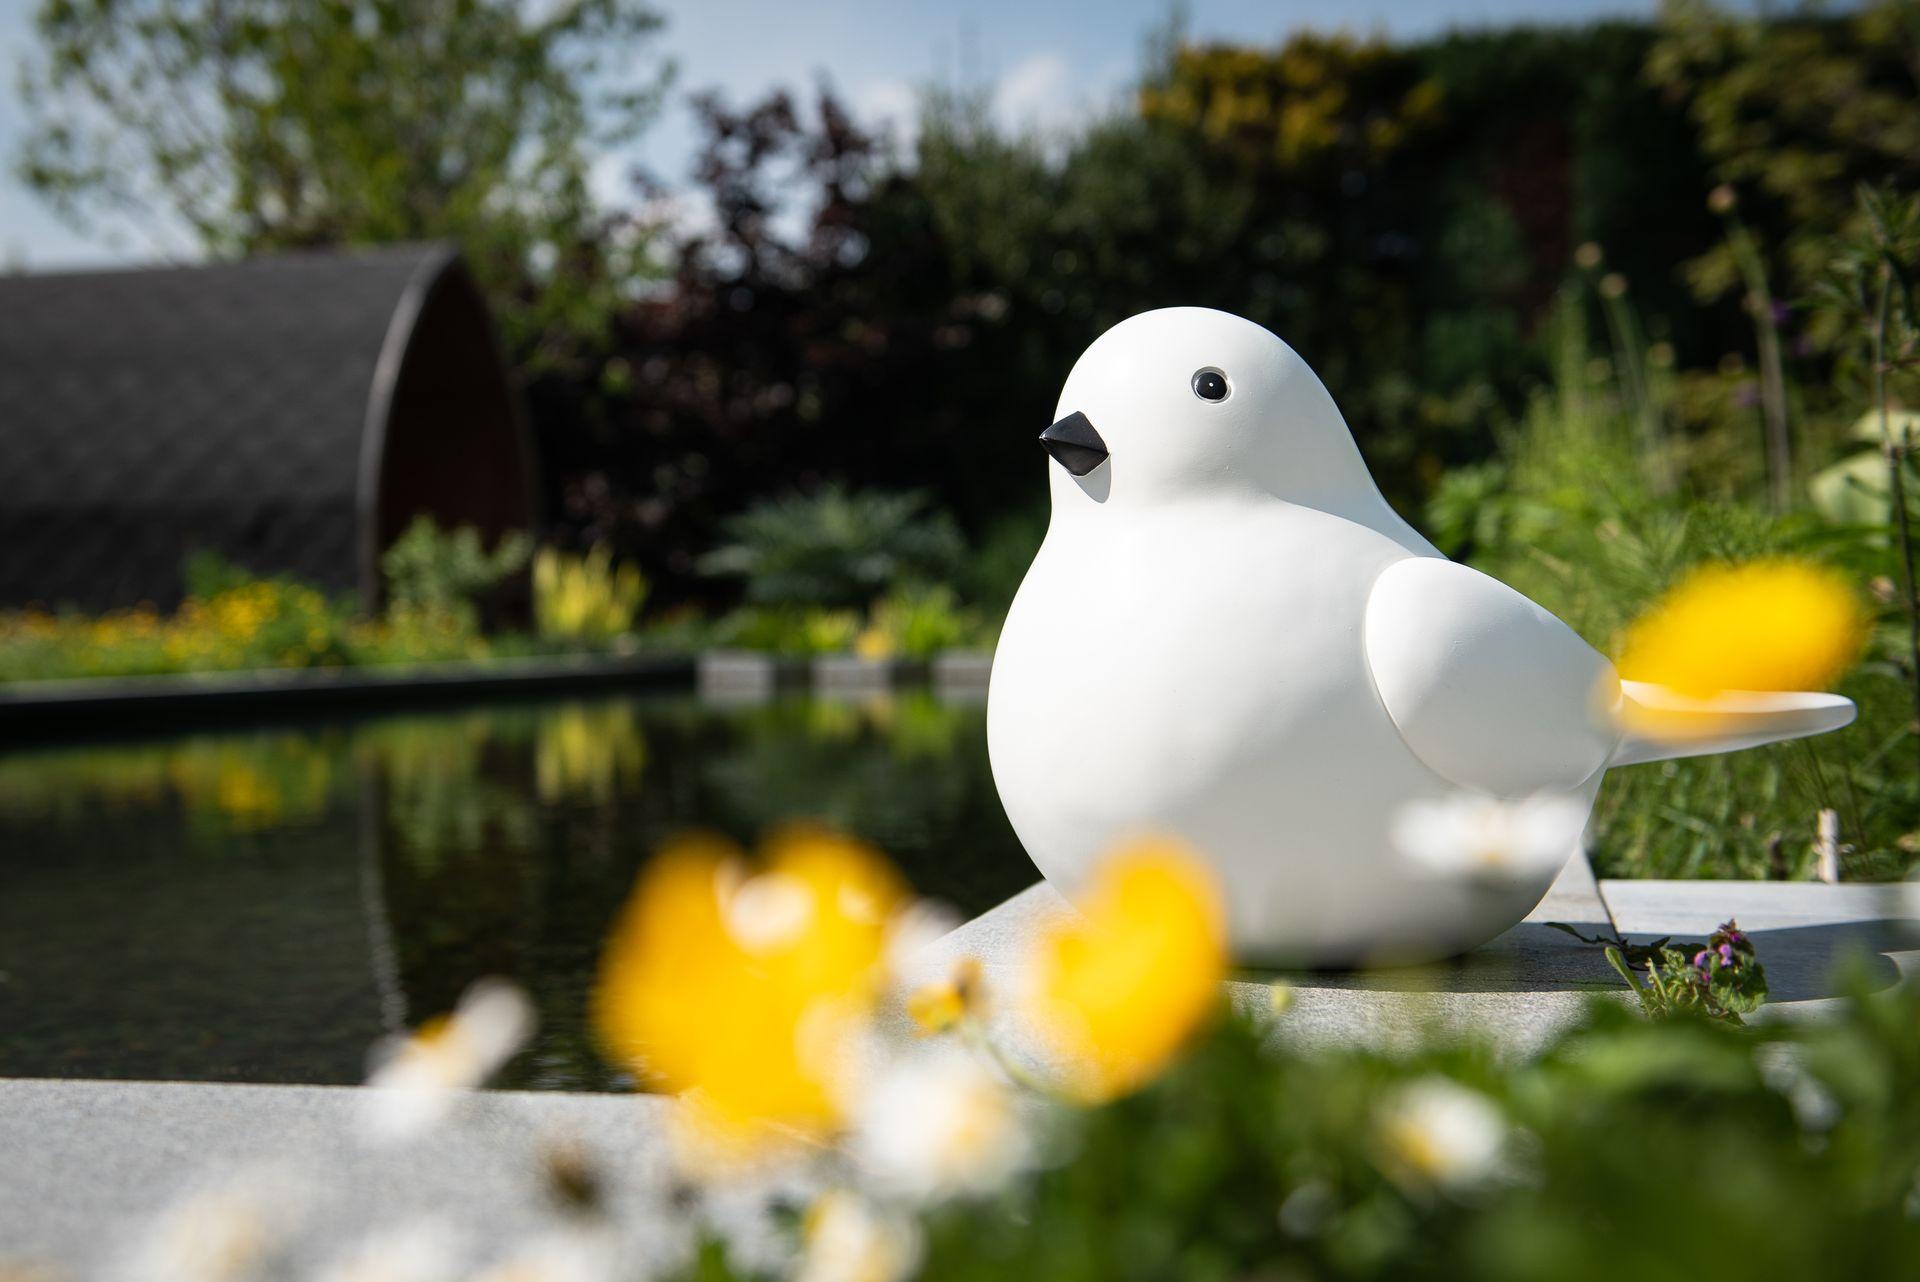 Statues of a modern white and black bird on a concrete slab next to a pondStatuen eines modernen weißen und schwarzen Vogels auf einer Betonplatte neben einem Teich Garden ID